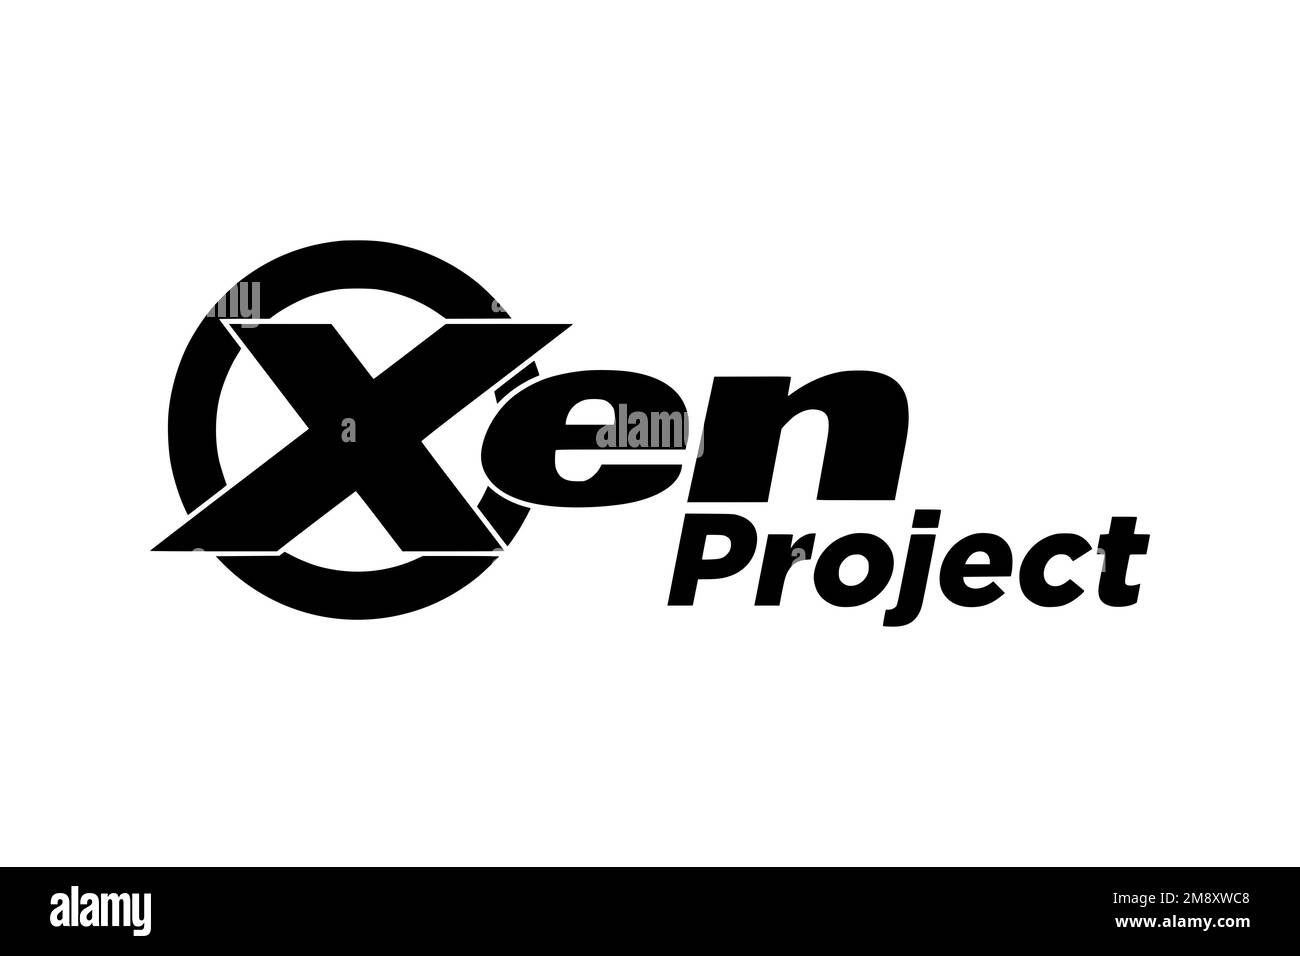 Xen, Logo, White background Stock Photo - Alamy